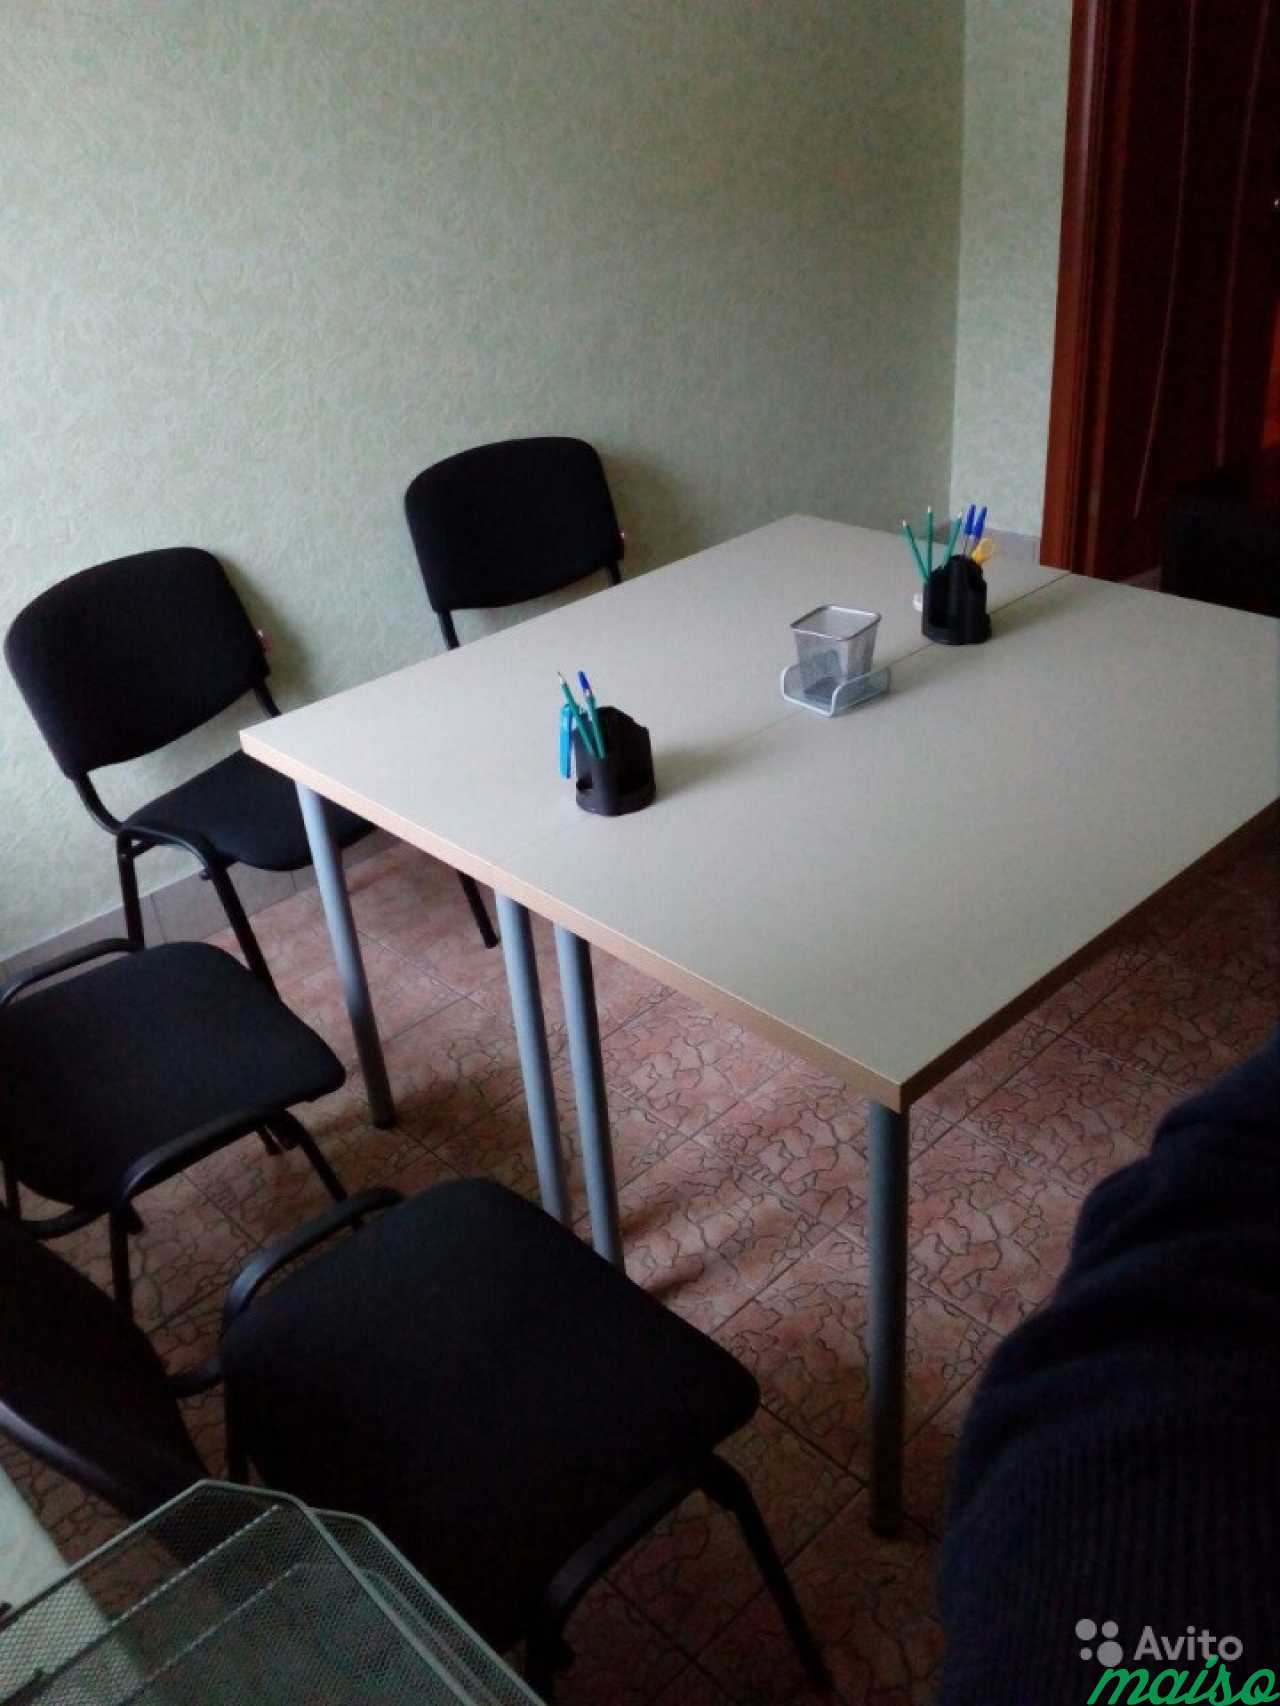 Аренда переговорной комнаты в Санкт-Петербурге в Санкт-Петербурге. Фото 4